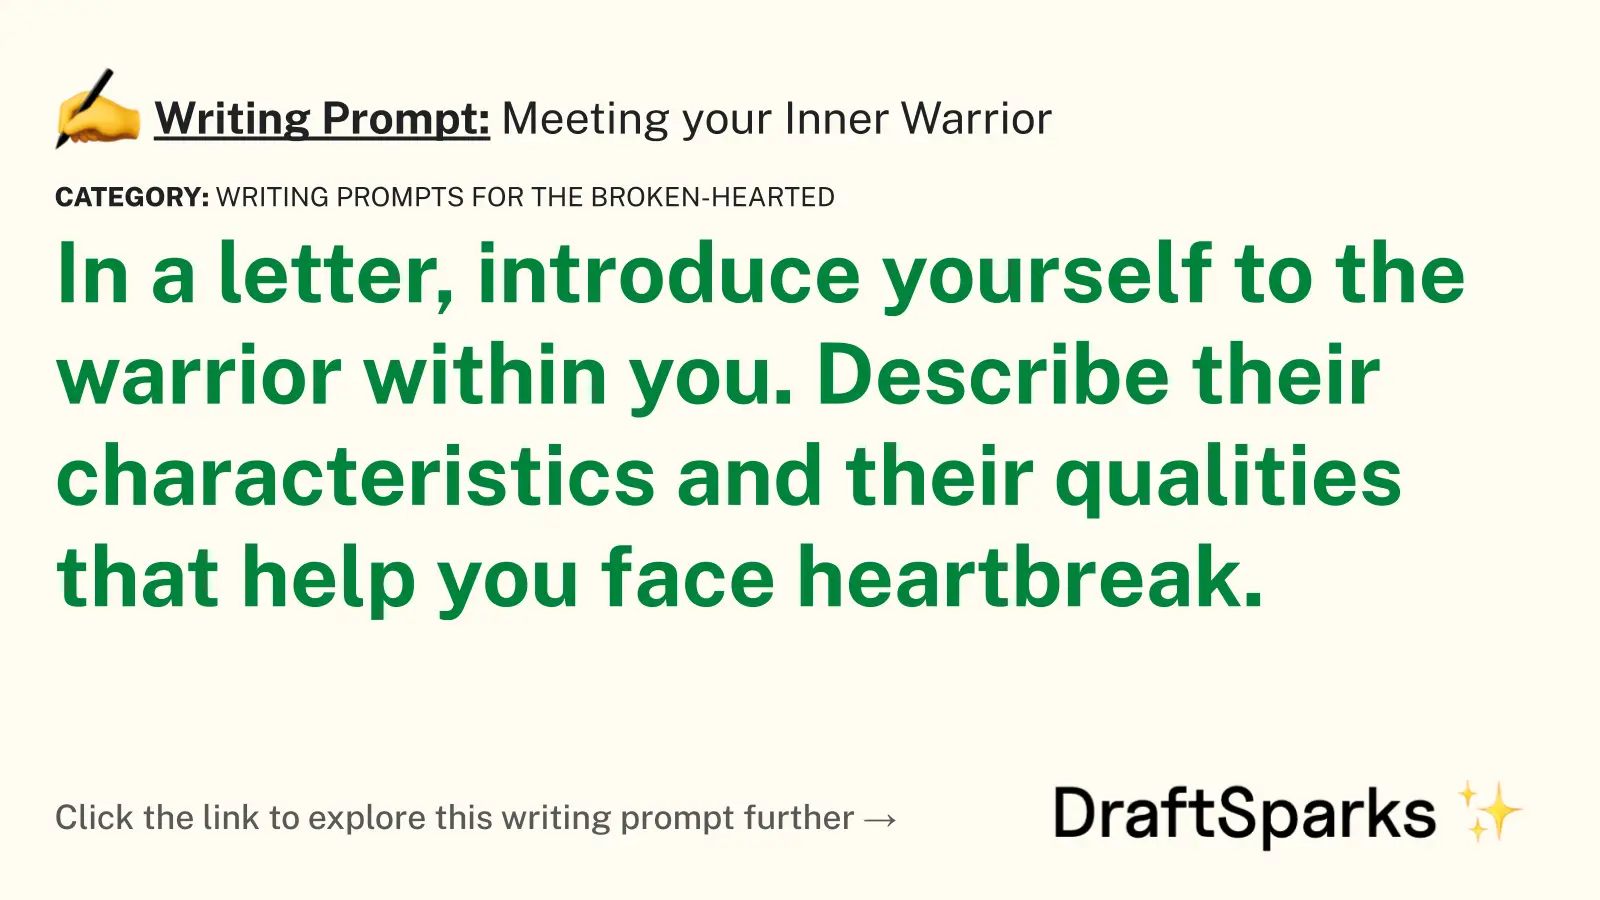 Meeting your Inner Warrior